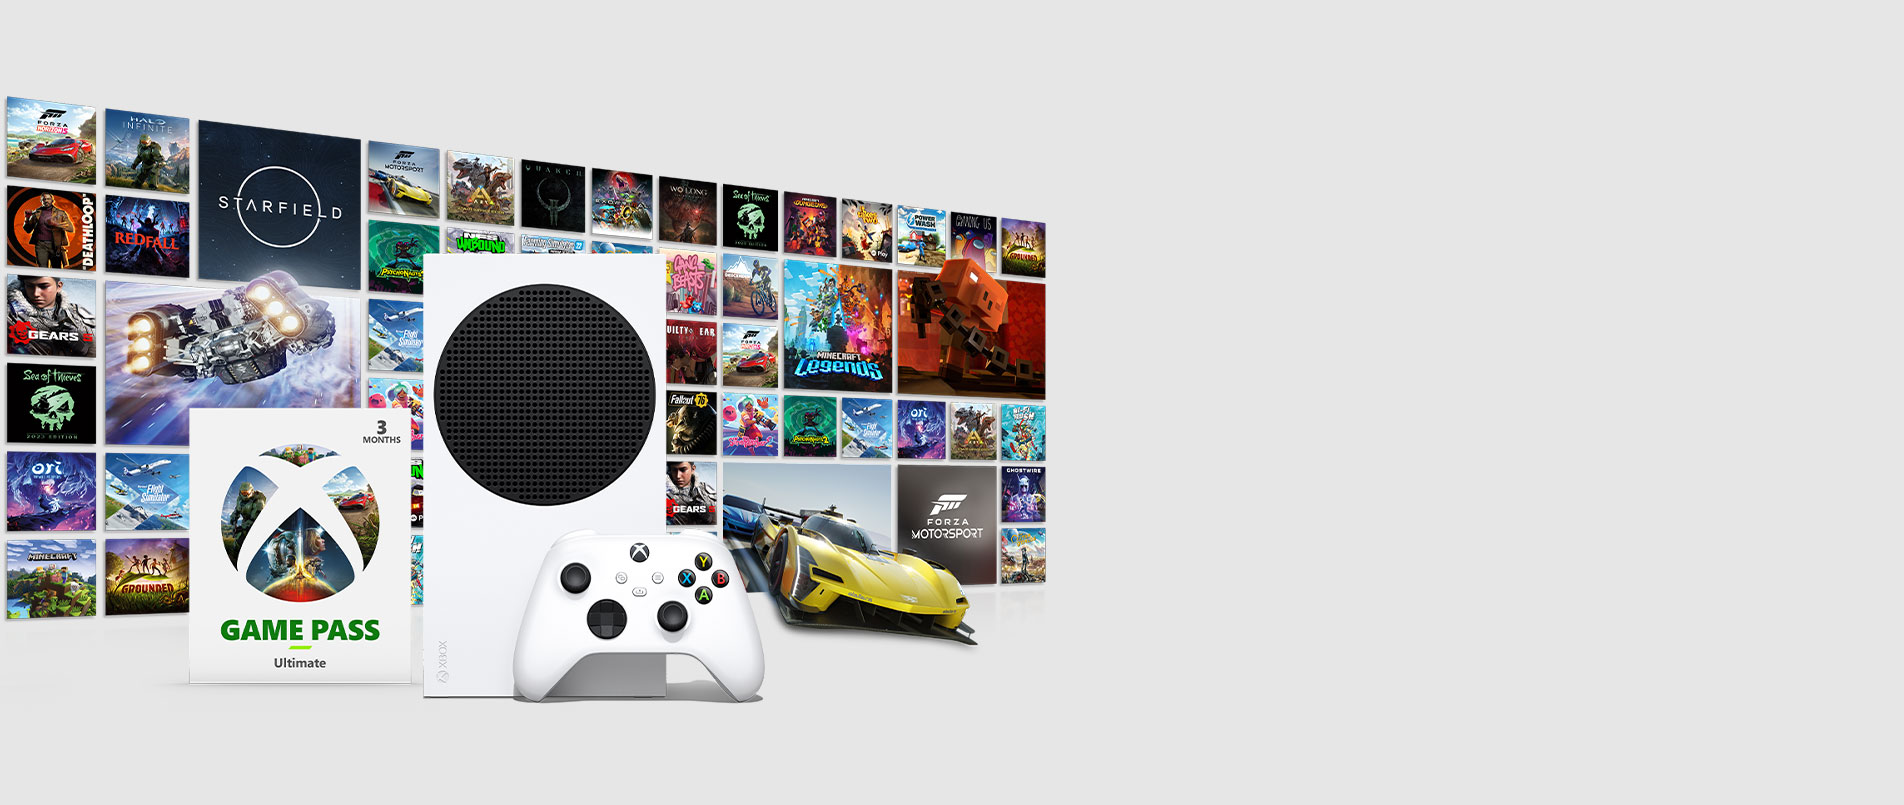 Site oficial do Xbox: Consoles, jogos e comunidade